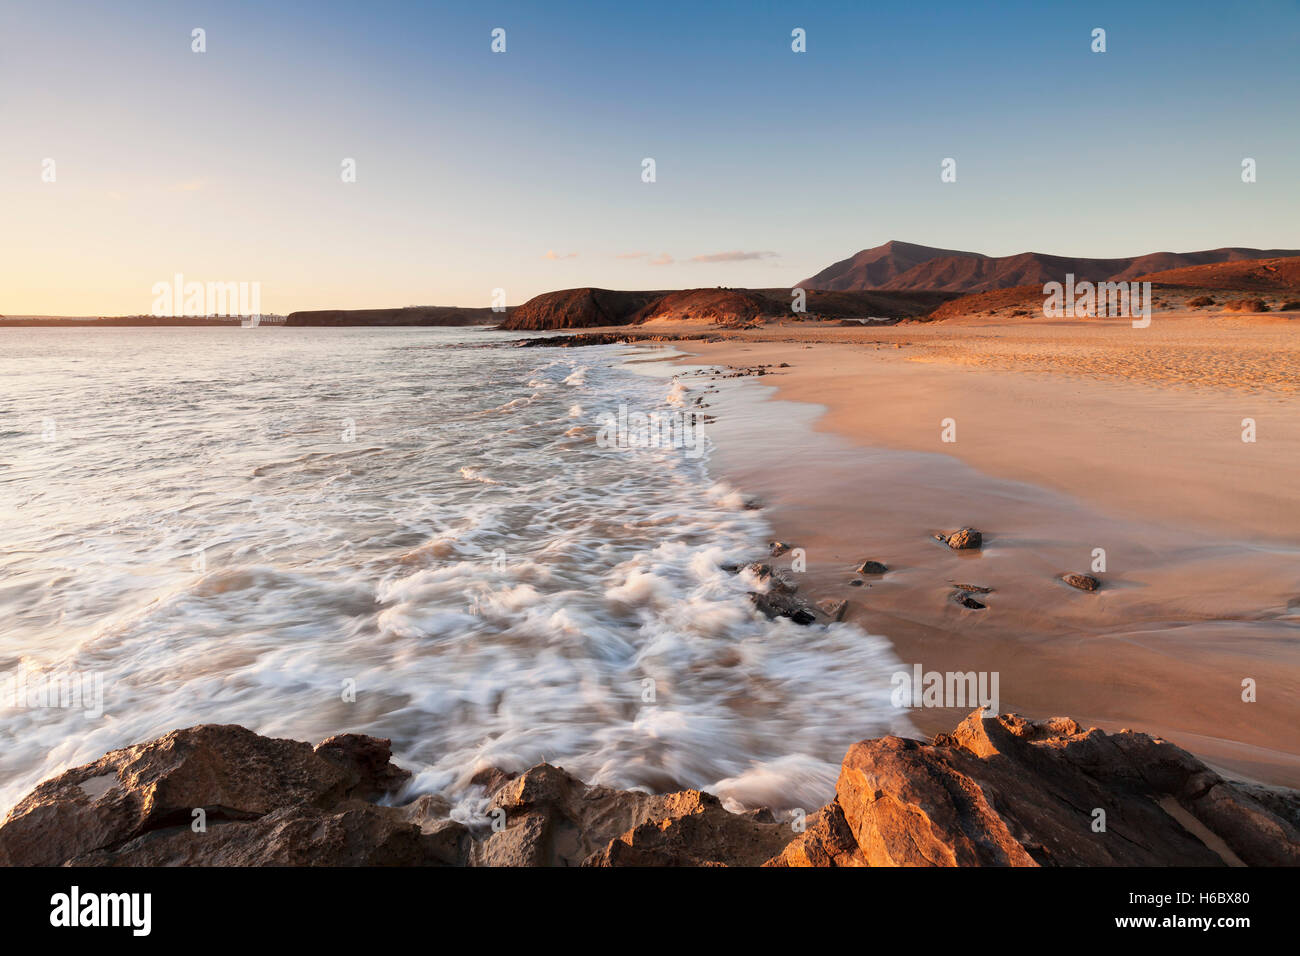 Playa Mujeres, luz del atardecer, Papagayo, cerca de Playa Blanca, Lanzarote, Islas Canarias, España Foto de stock